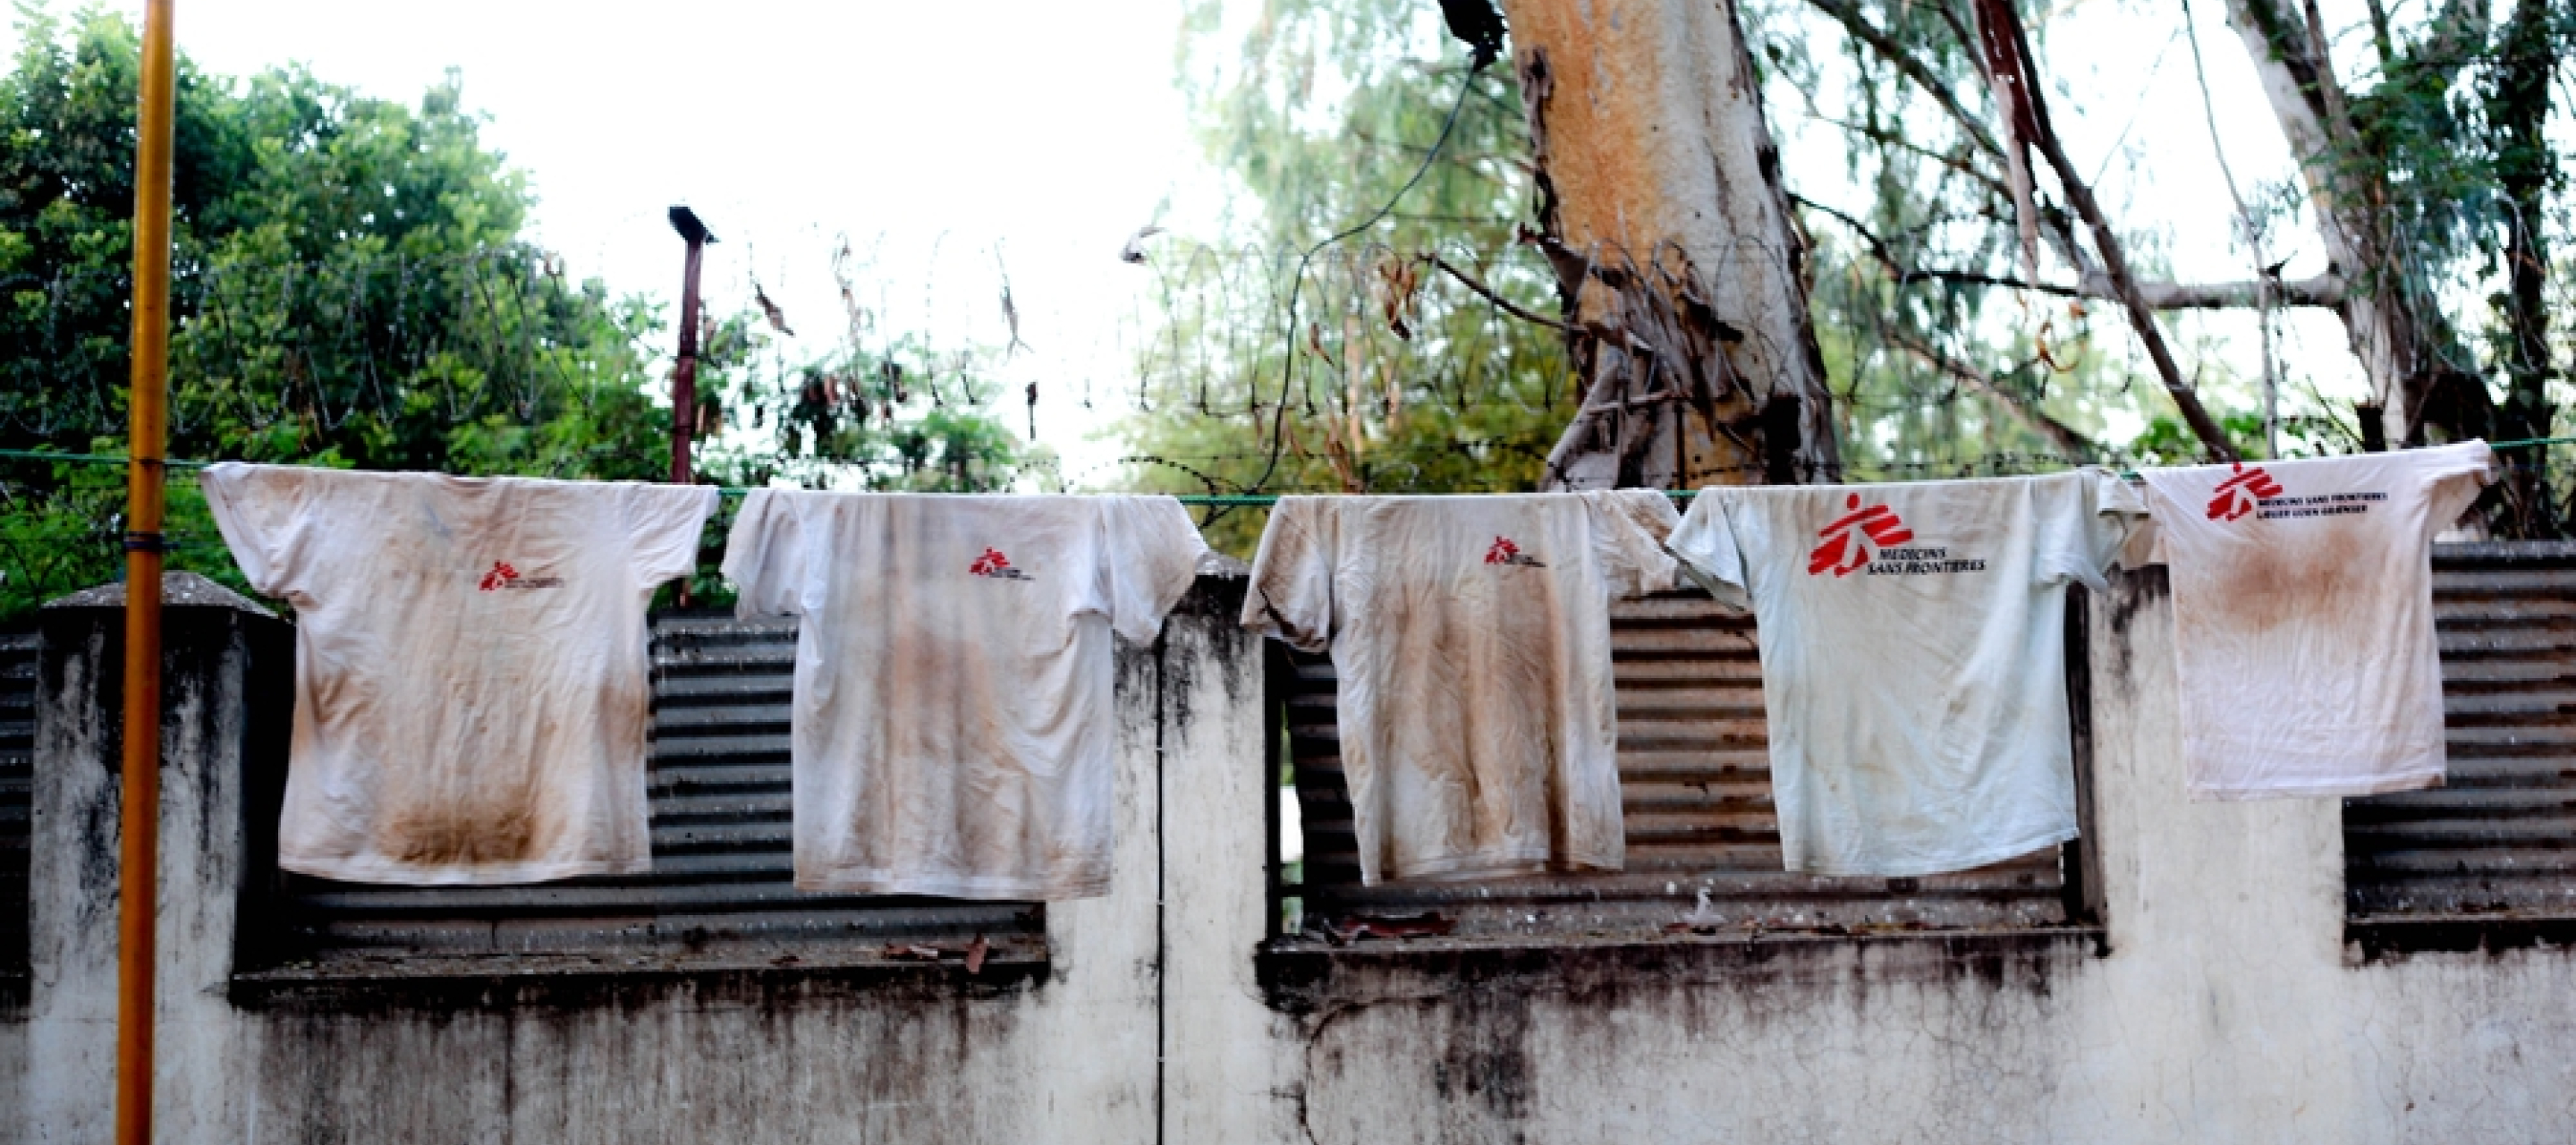 Schmutzige weiße T-Shirts mit Ärzte ohne Grenzen Audruck hängen auf einer Wäscheleine